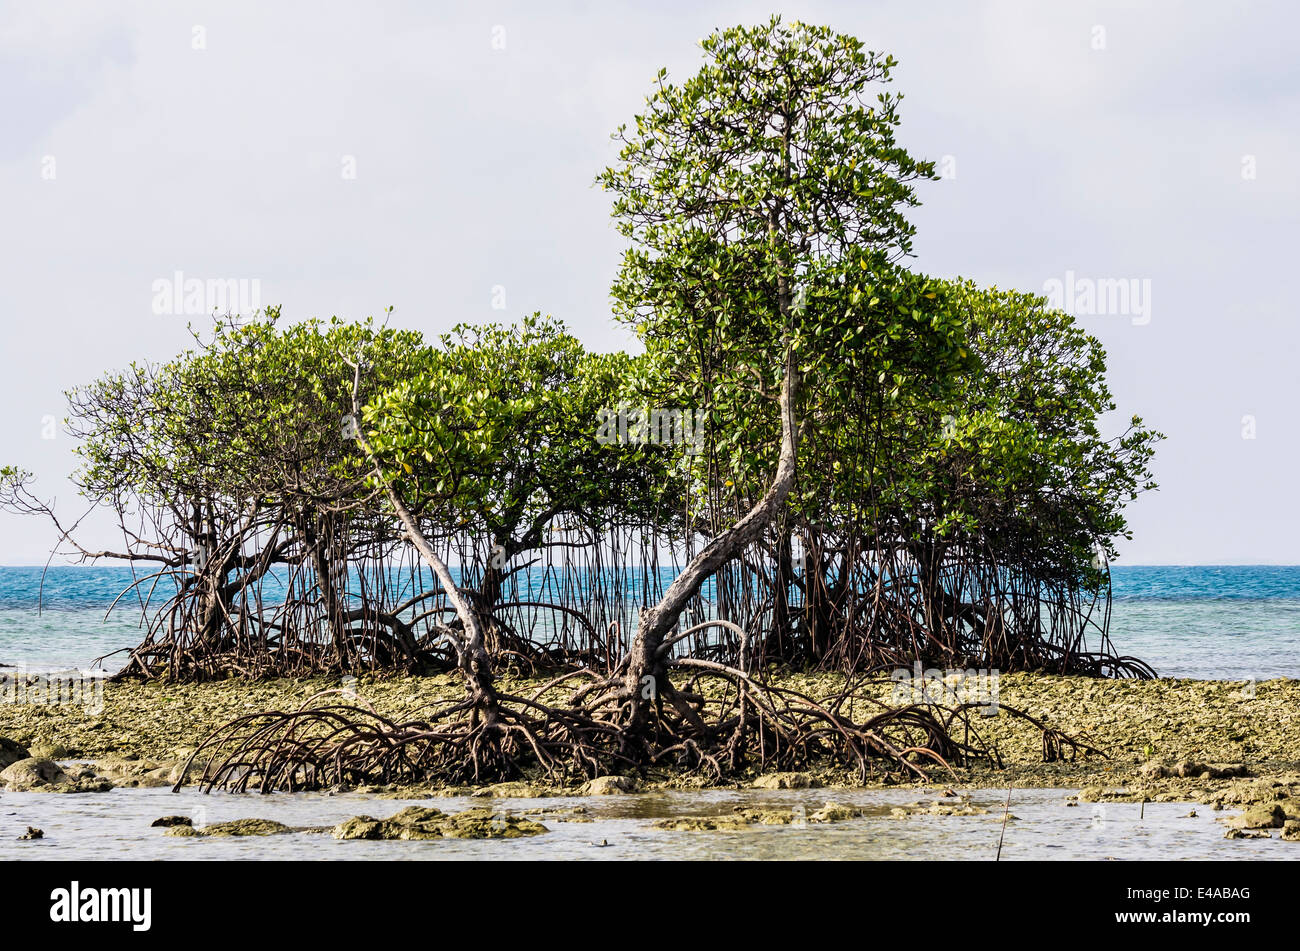 L'Indonésie, les Îles Riau, l'île de Bintan, André, les mangroves Banque D'Images